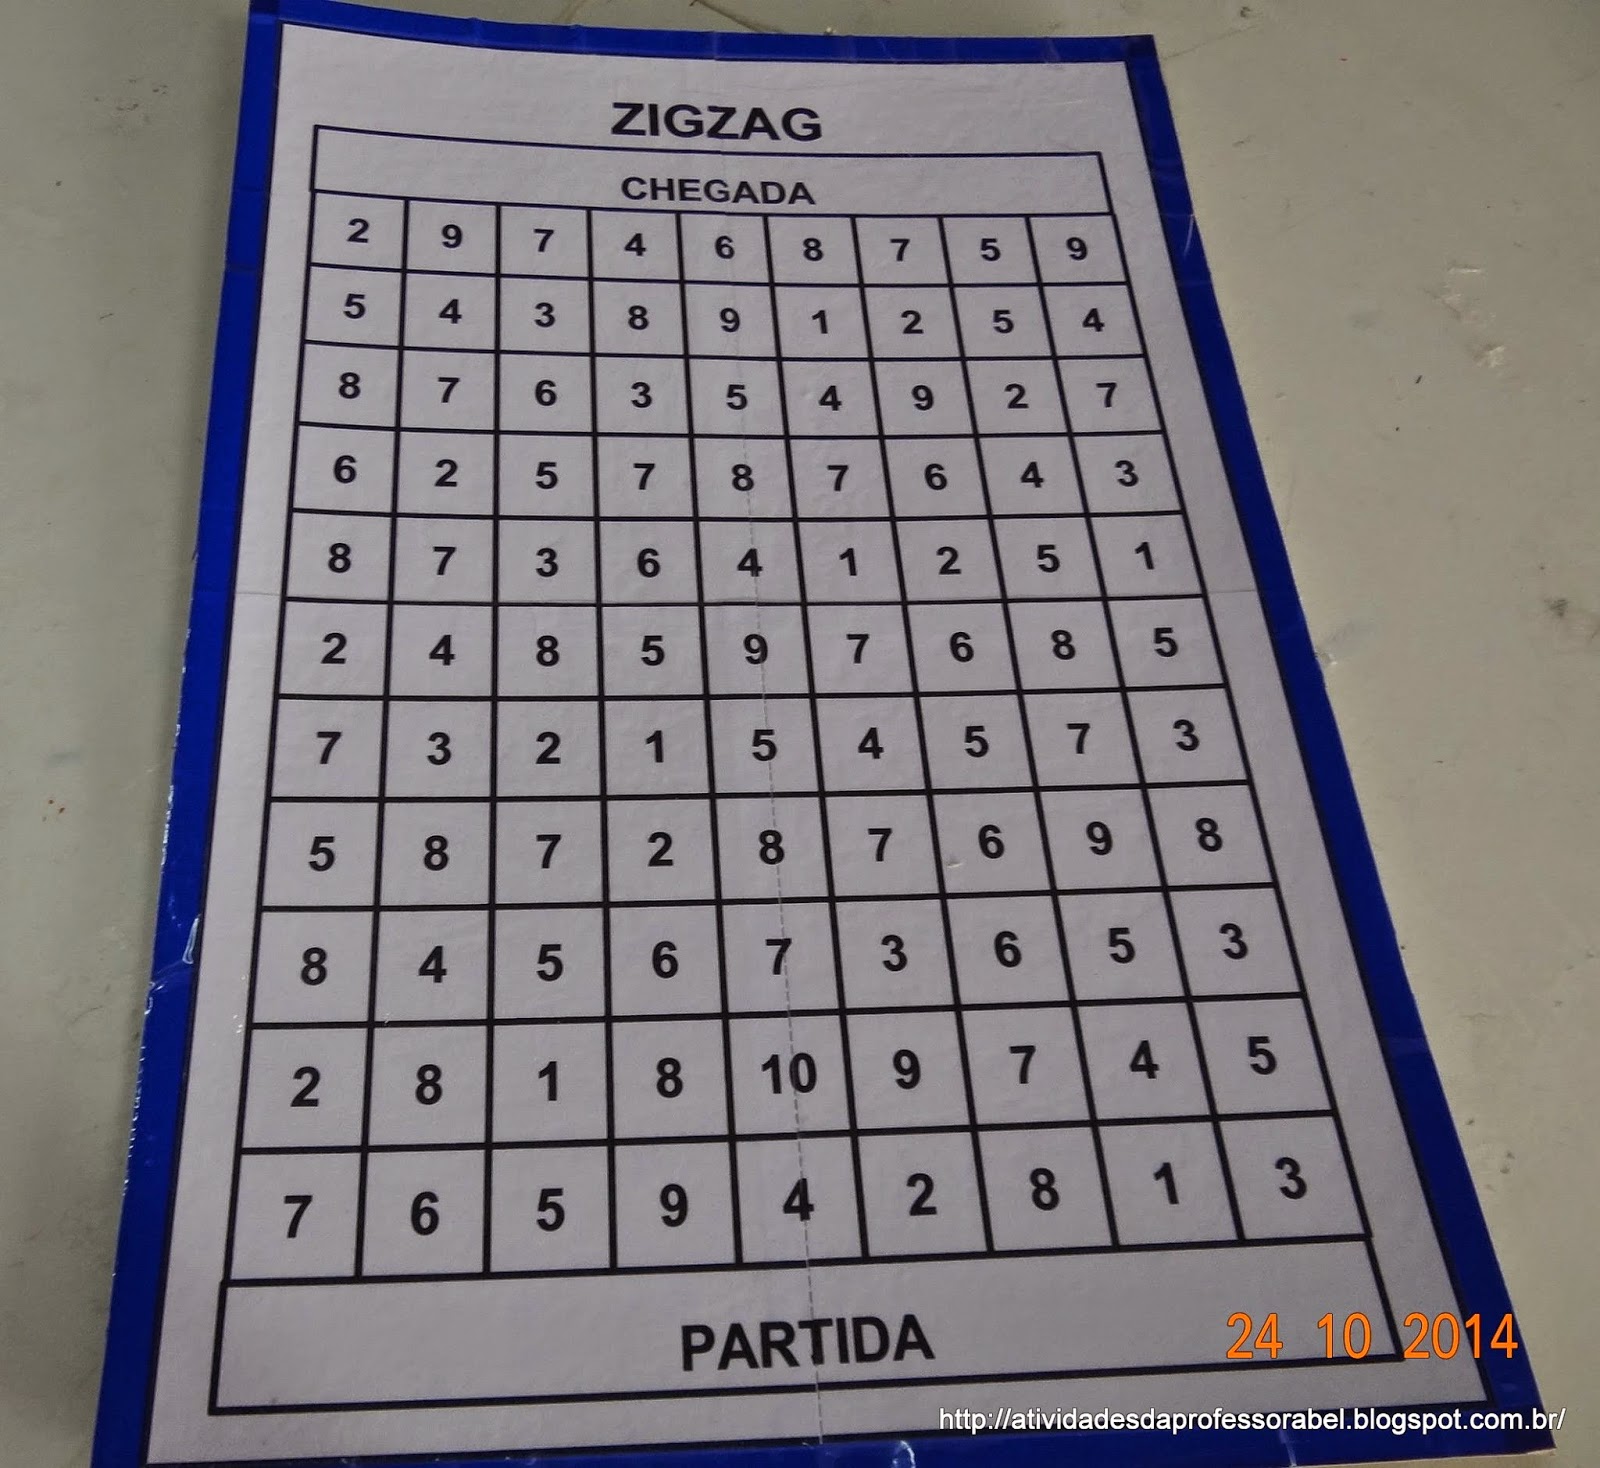 Jogo Numérico Sudoku Para Imprimir Com Resposta. Jogo Nº 134.